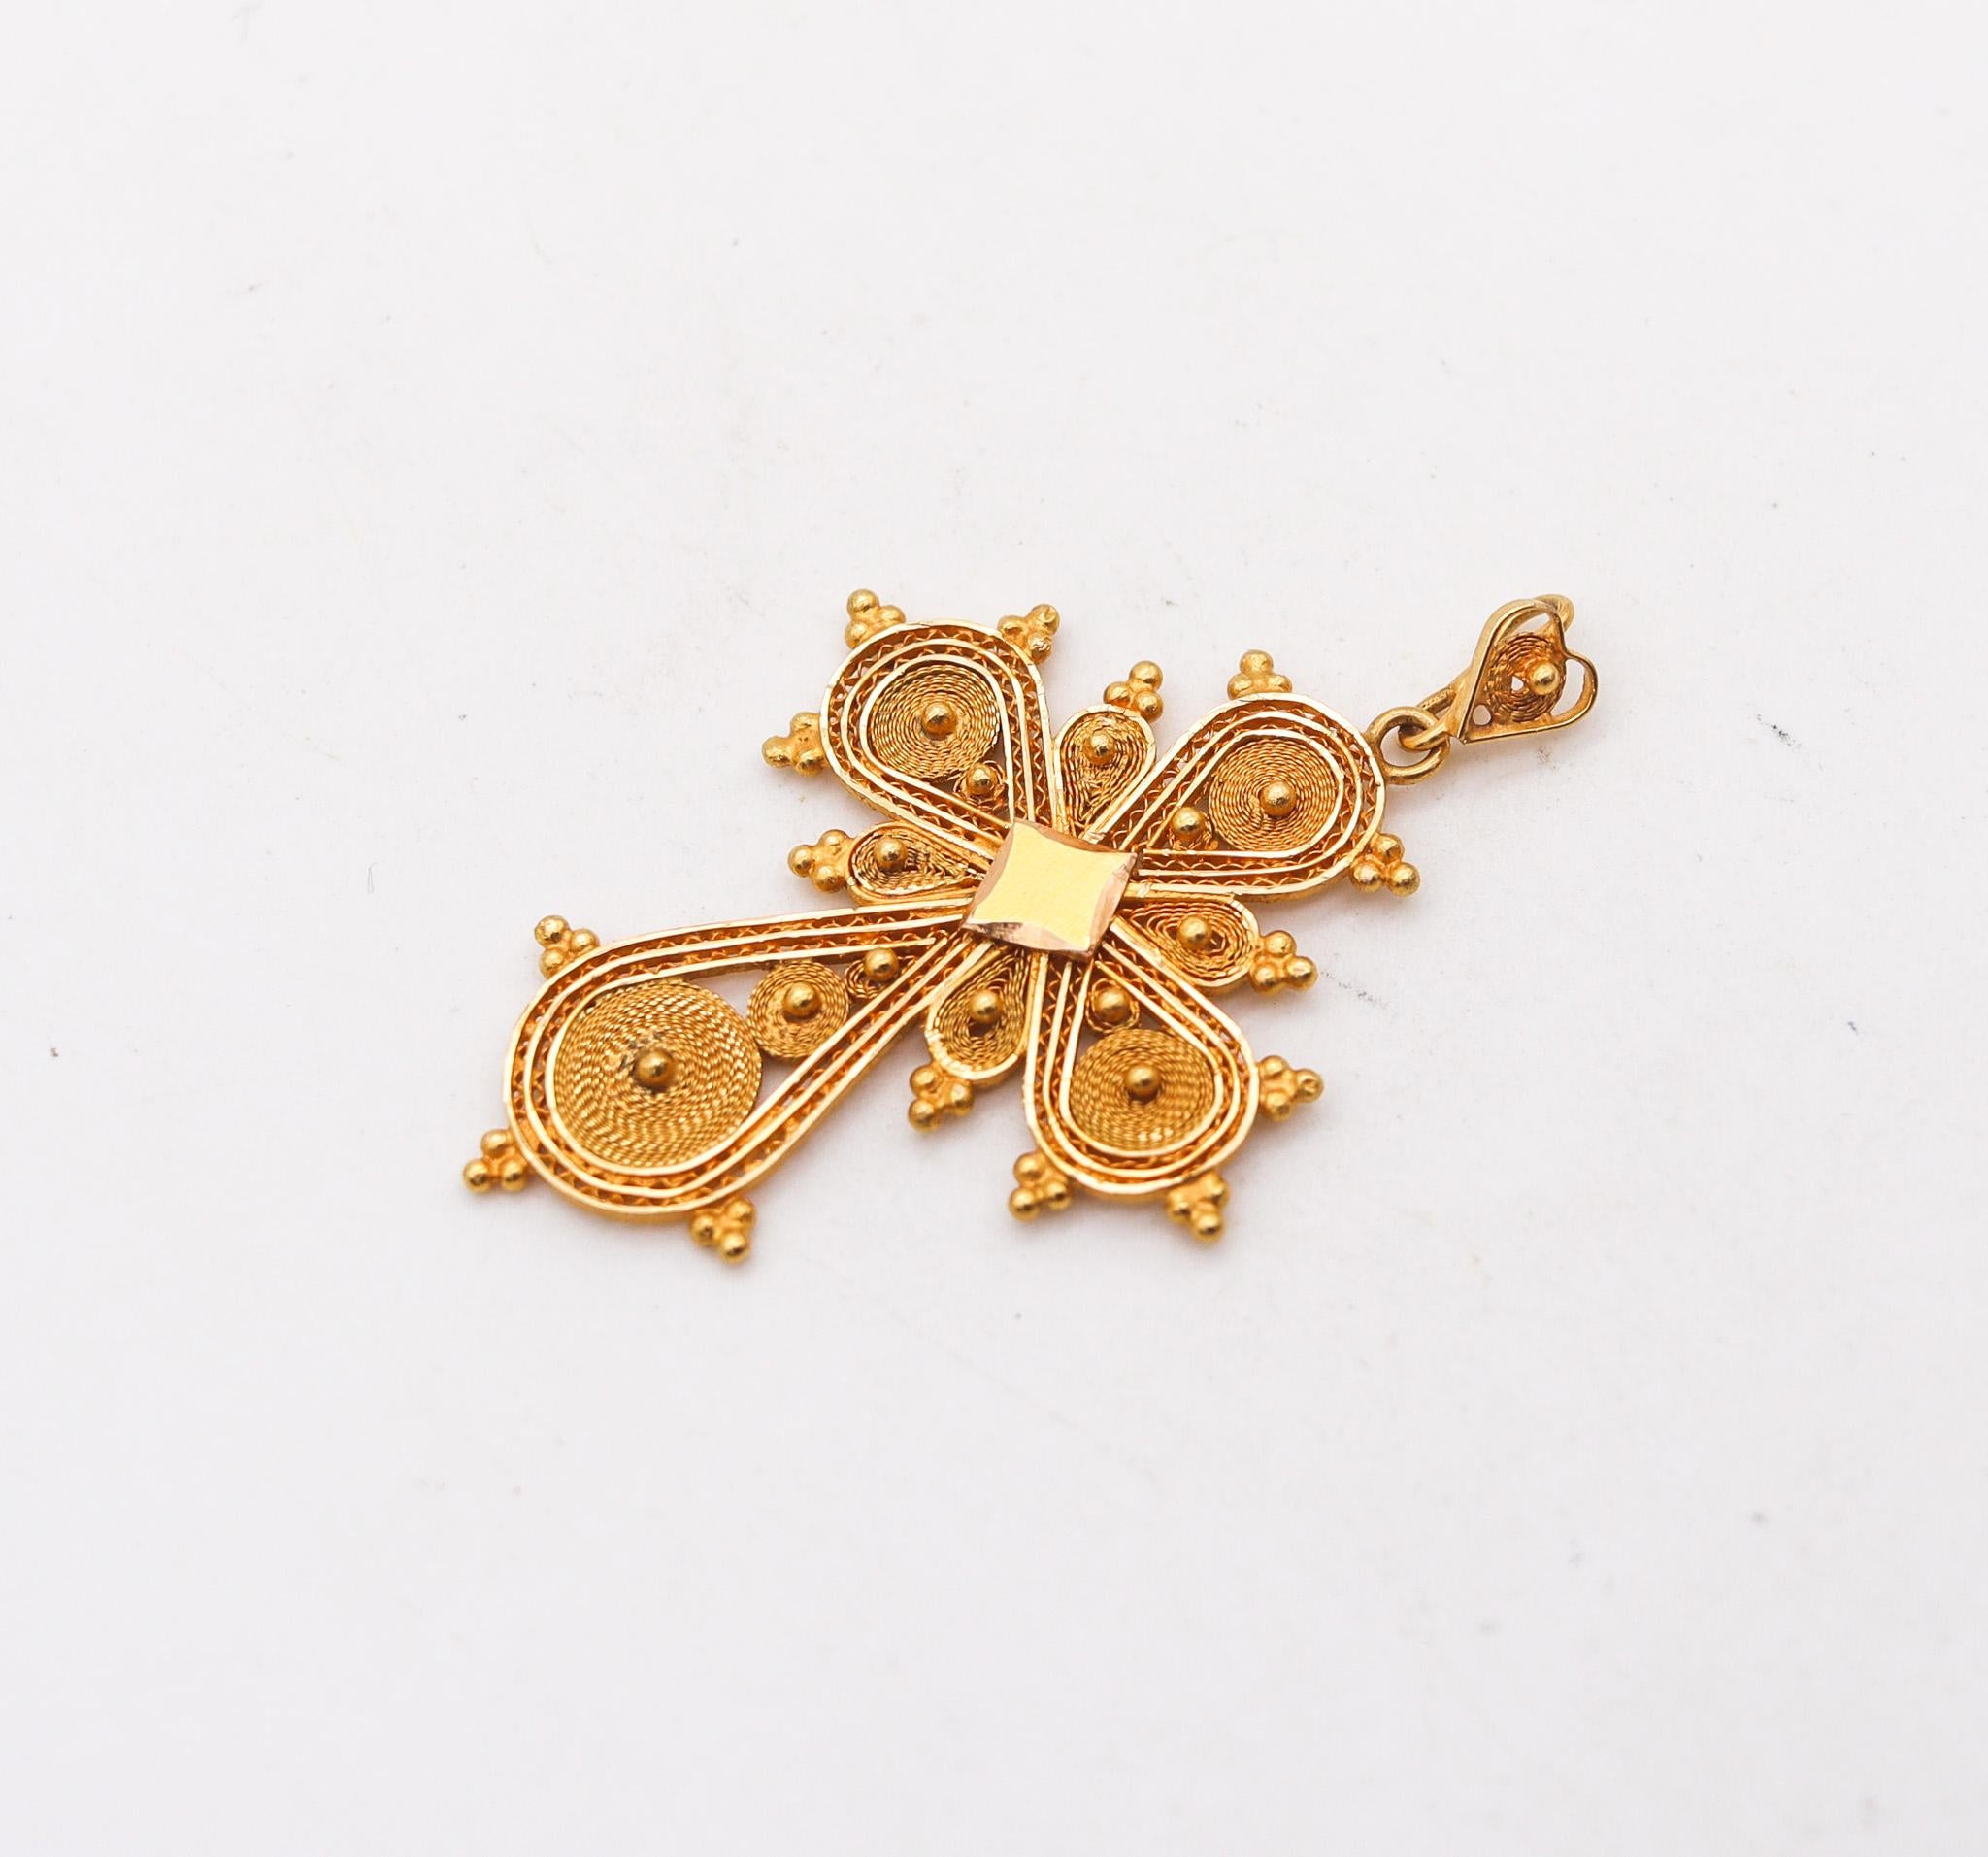 Pendentif croix portugaise en filigrane.

Magnifique croix pendentif, créée au Portugal, à l'époque victorienne, vers 1850 ou avant. Réalisé en forme de croix byzantine, avec la technique du filigrane en or jaune massif de 18 et 21 carats avec des